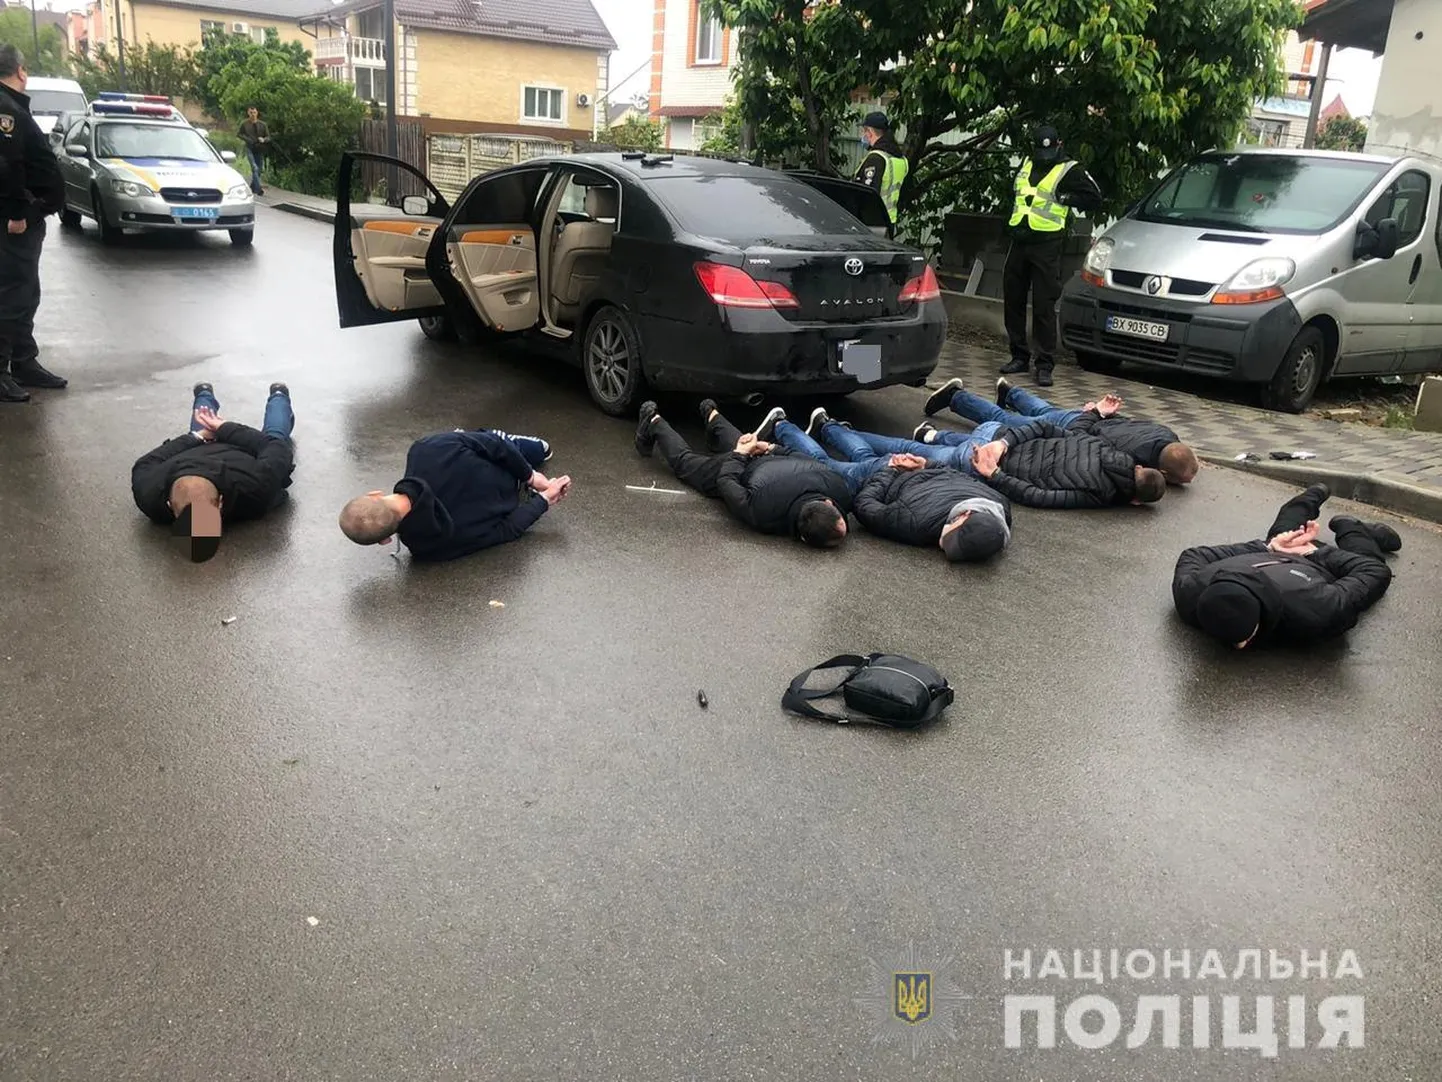 Ukraina politsei pidas kinni mehed, kes osalesid kahe bussifirmaga seotud rühmituste vahel puhkenud tulevahetuses.